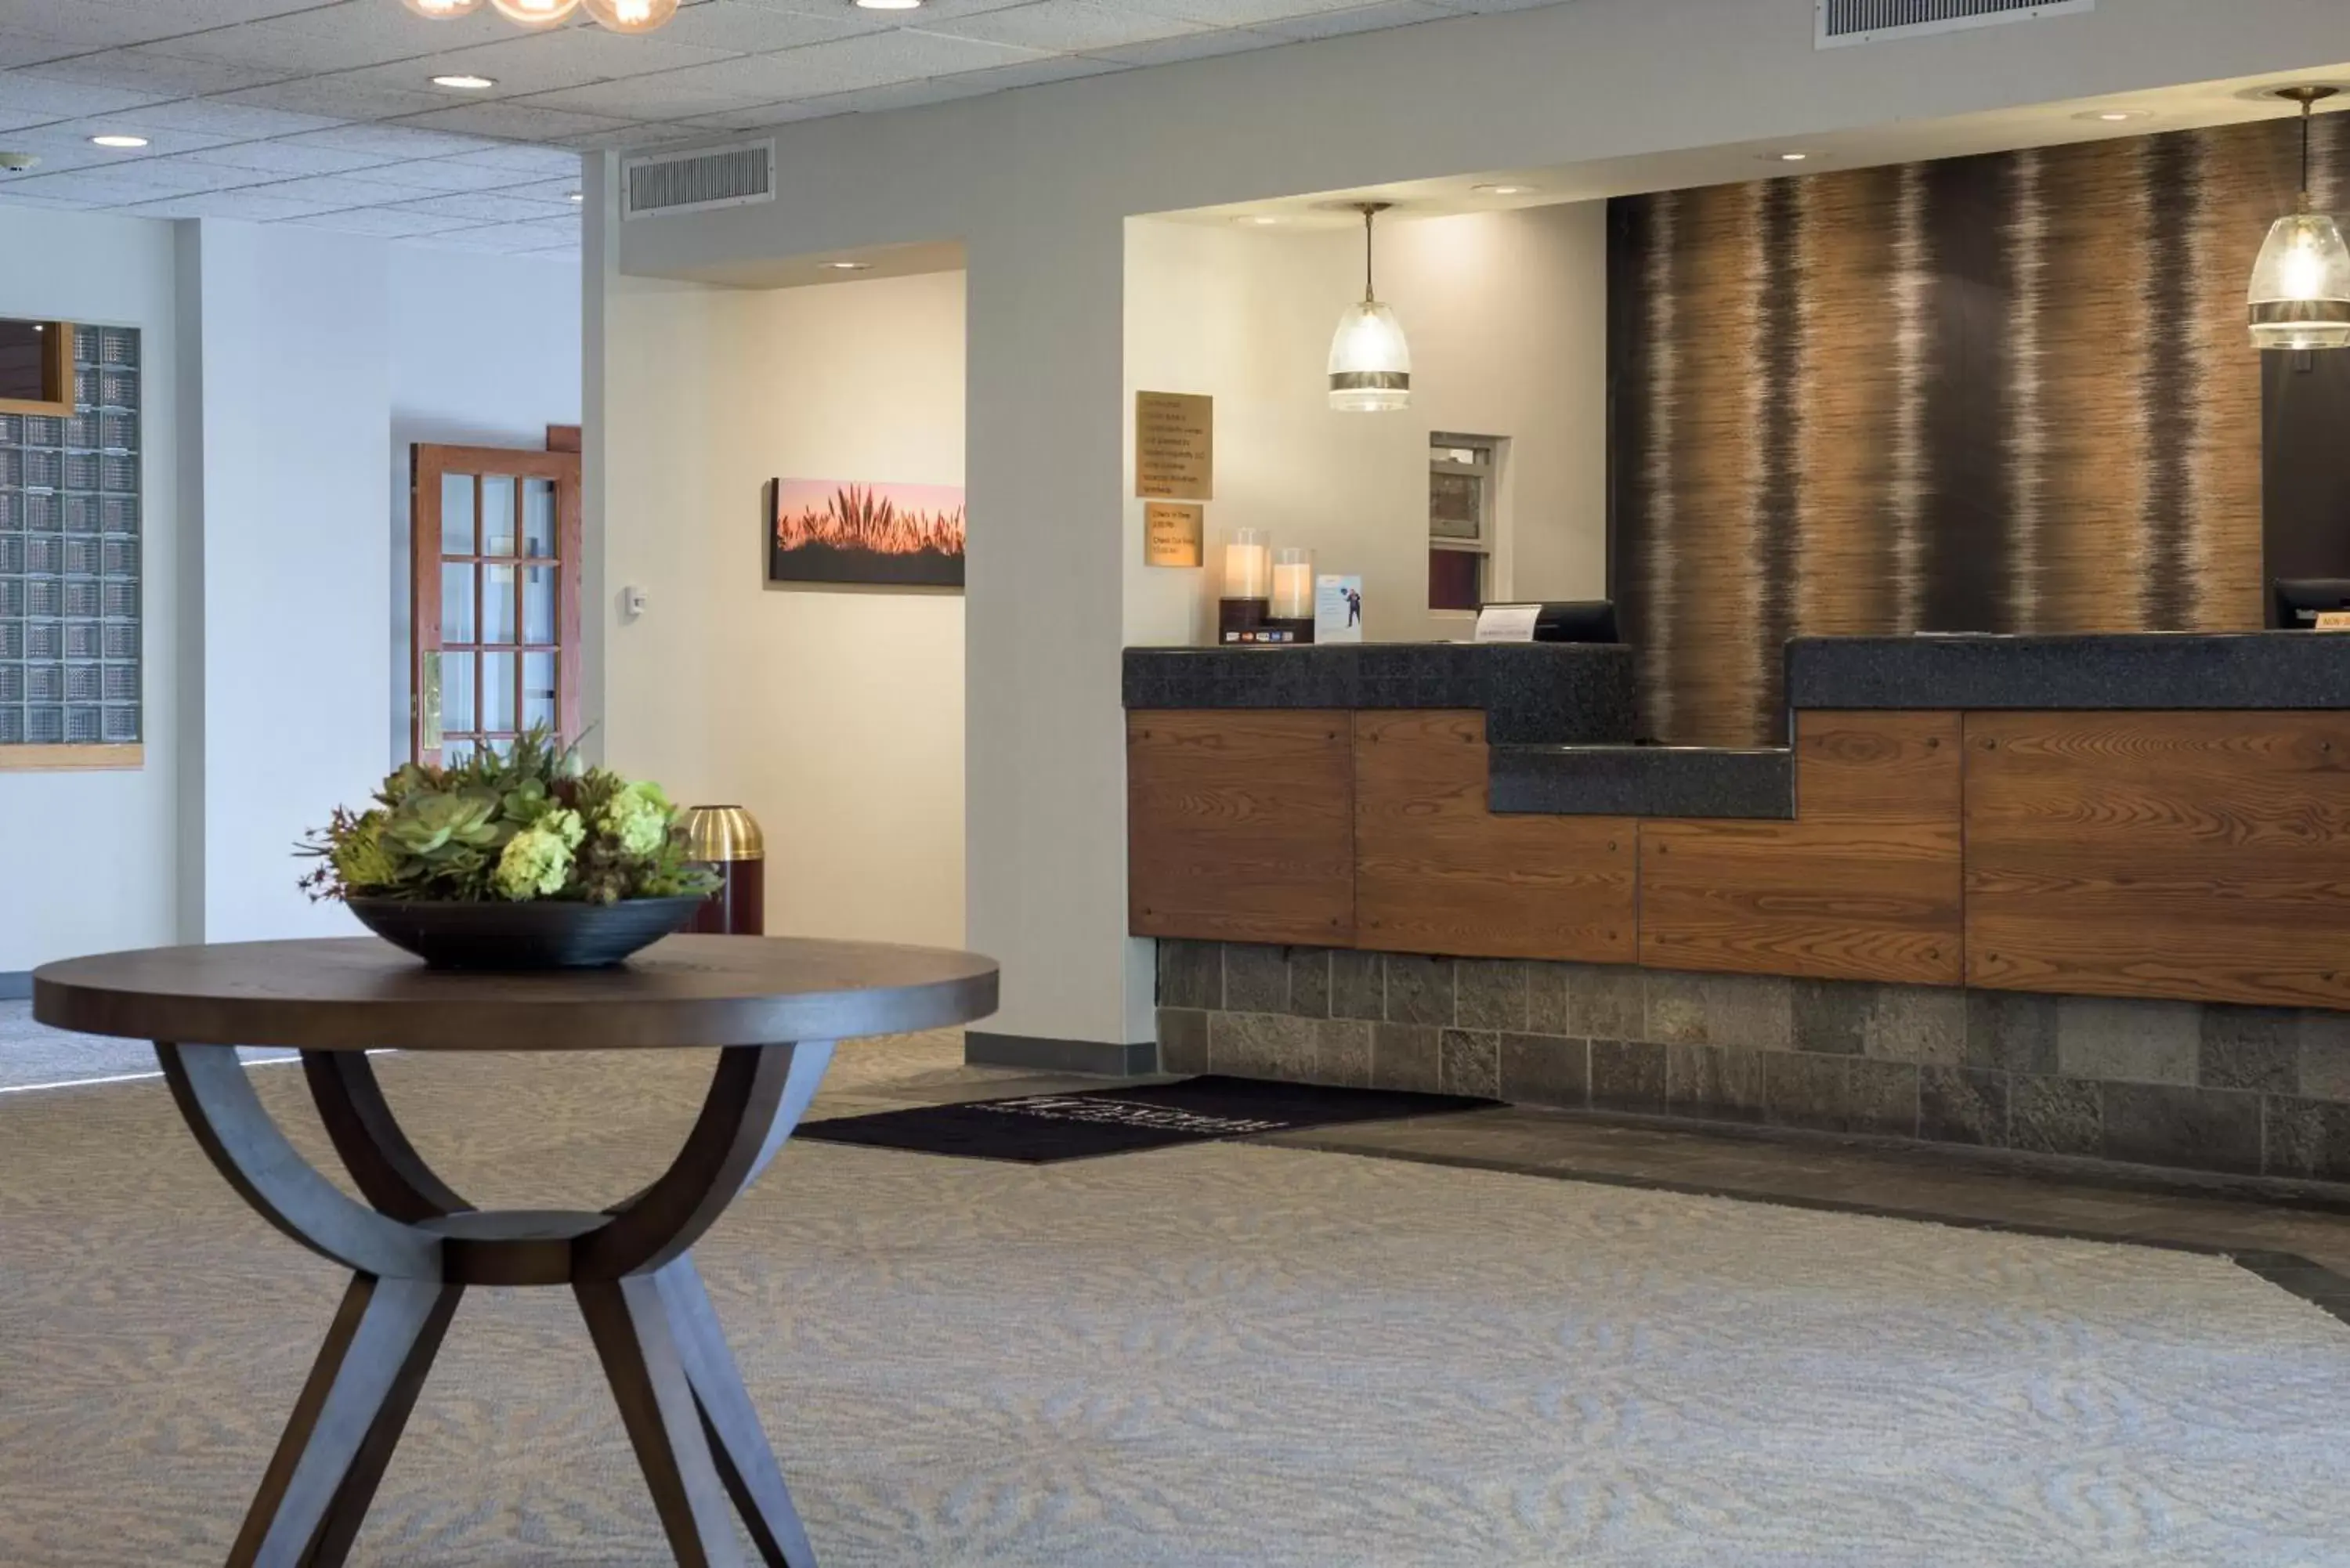 Lobby or reception in Ramada by Wyndham Boise